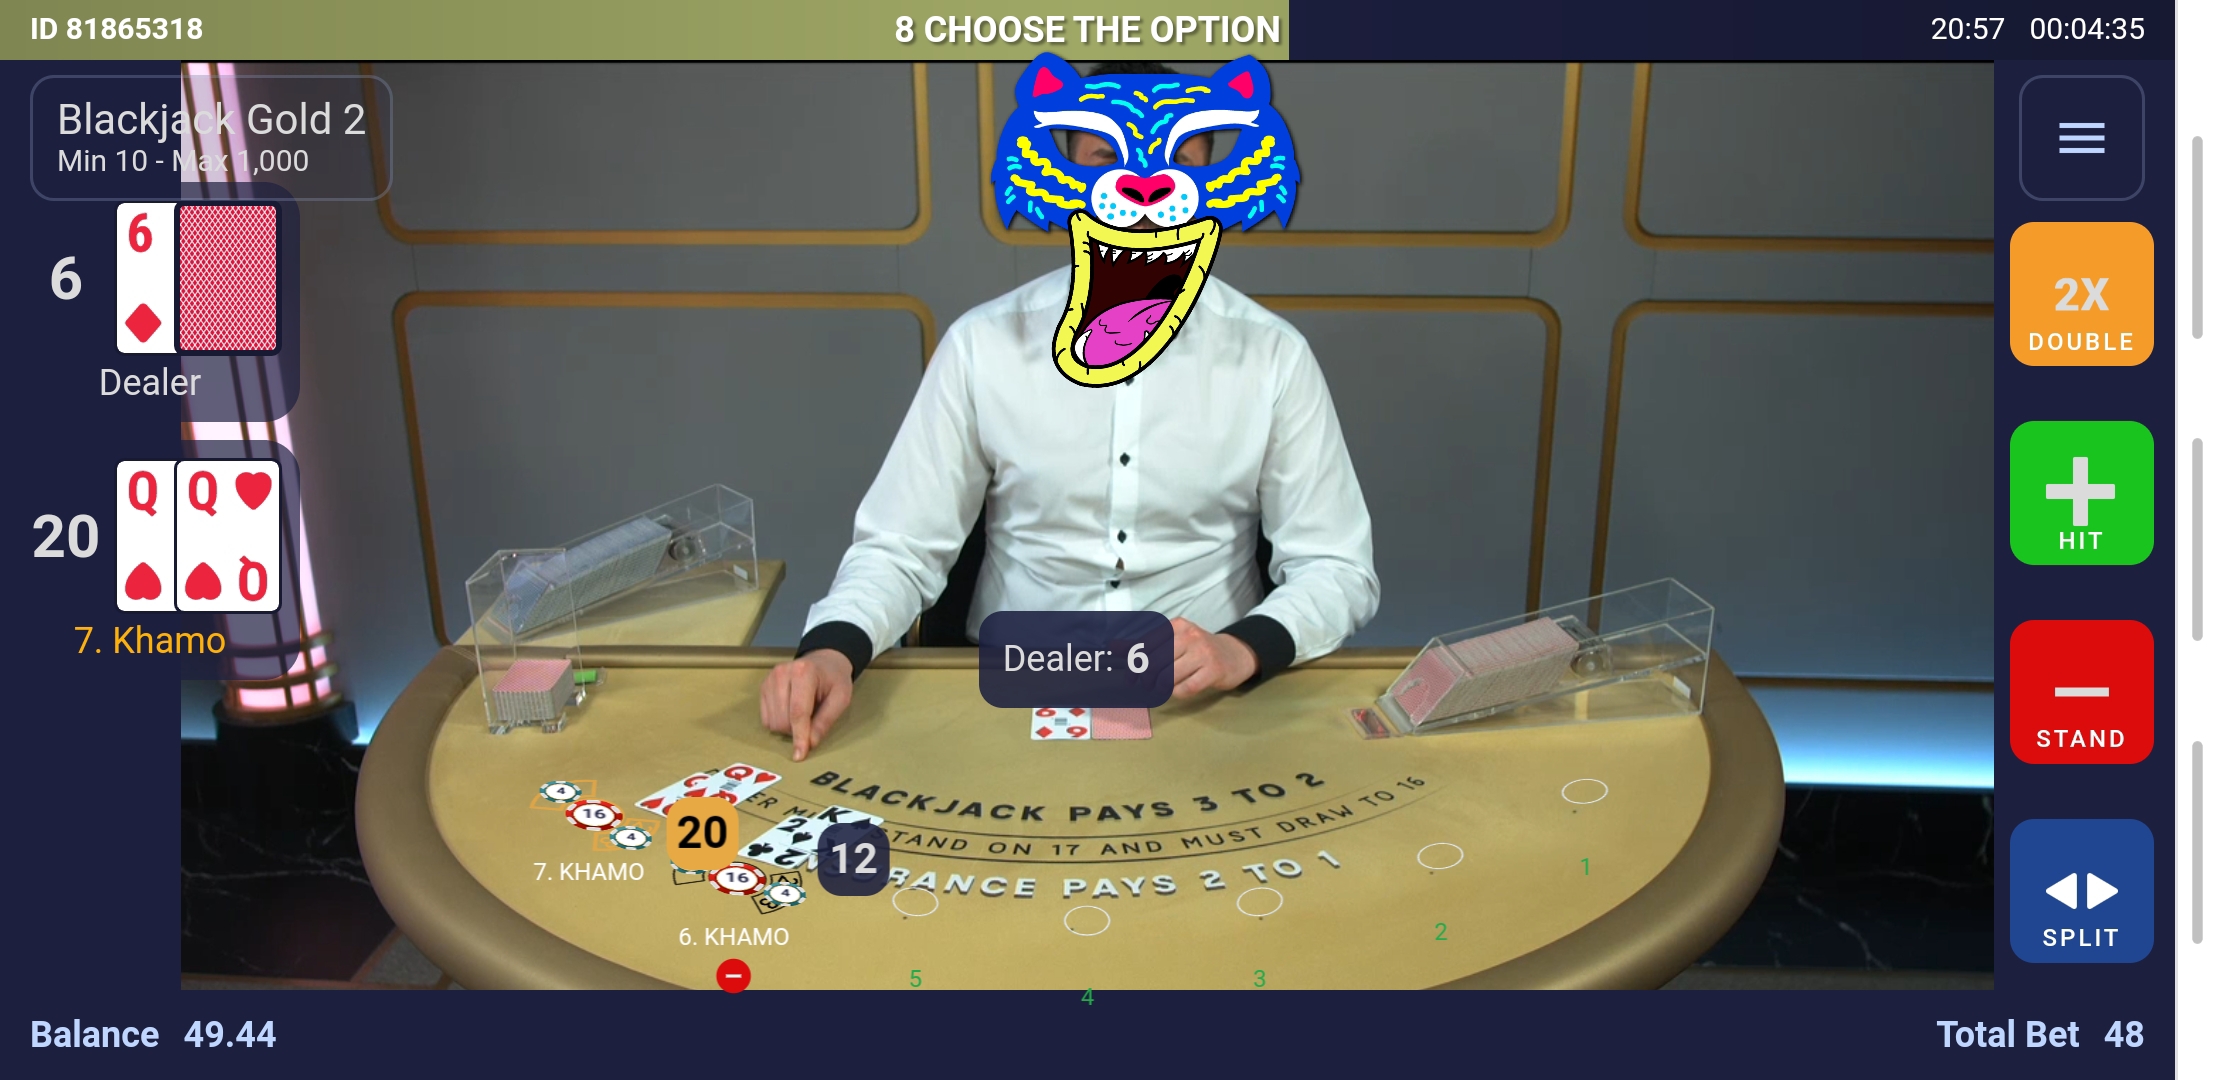 live blackjack dealers online